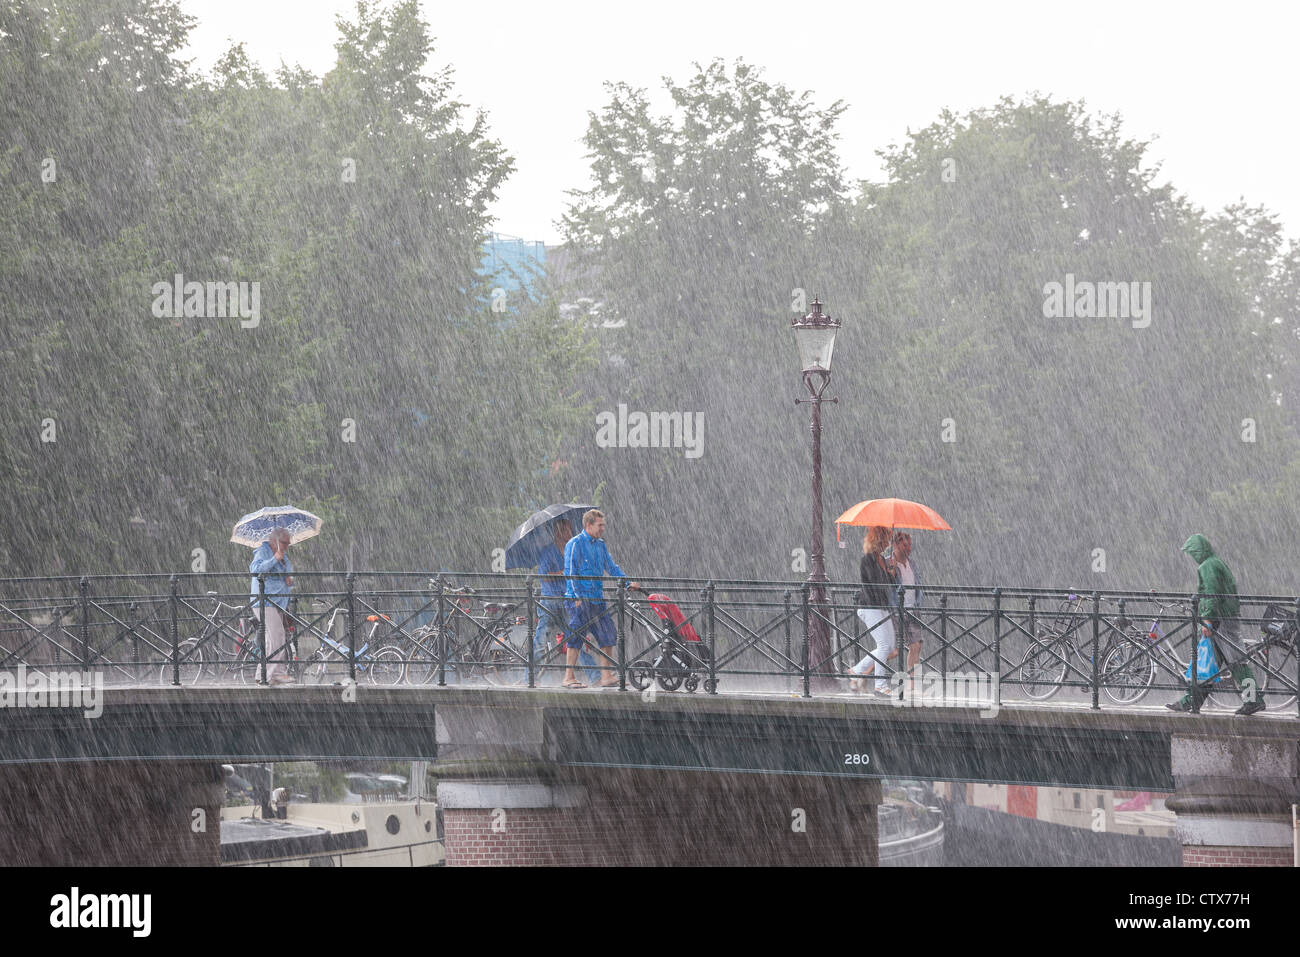 Amsterdam-Brücke. Plötzlichen reißenden Sommerregen. Menschen auf einer Brücke mit Sonnenschirmen. Eine lokale in Regenkleidung mit Einkaufstasche. Stockfoto